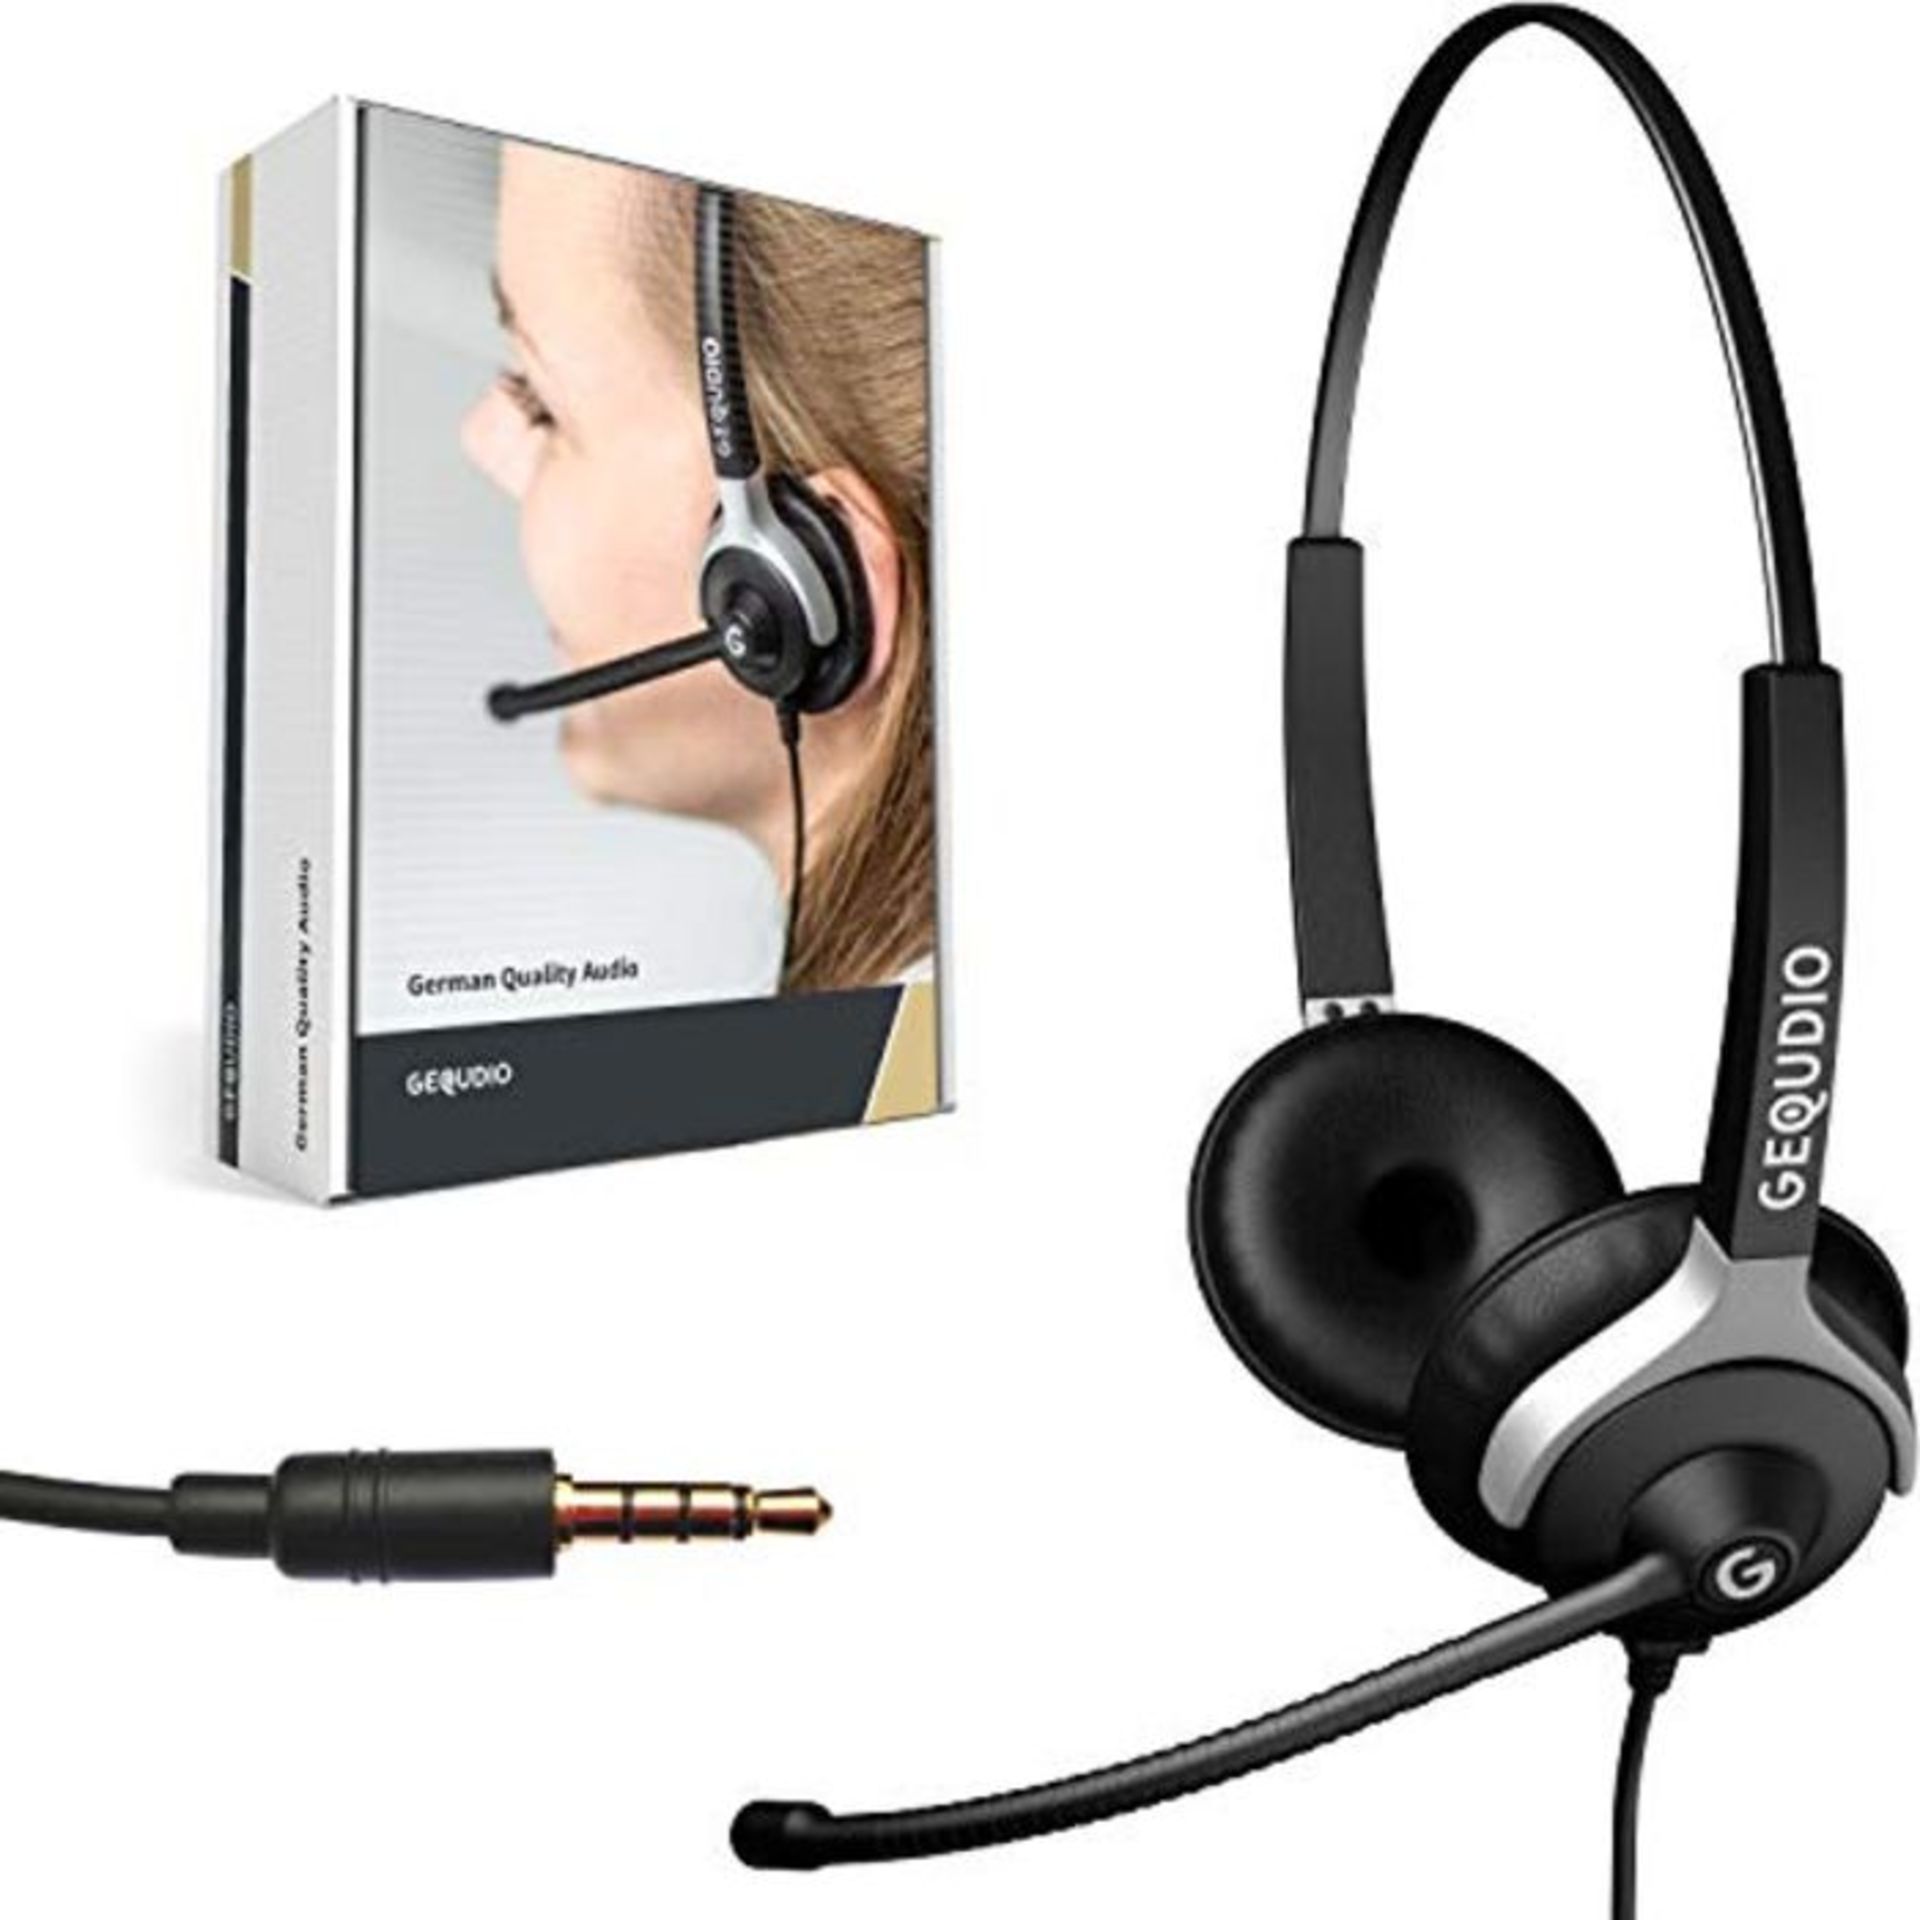 RRP £55.00 GEQUDIO Headset mit 3,5mm Klinke kompatibel mit FritzFon C6, MacBook, Smartphone, Spee